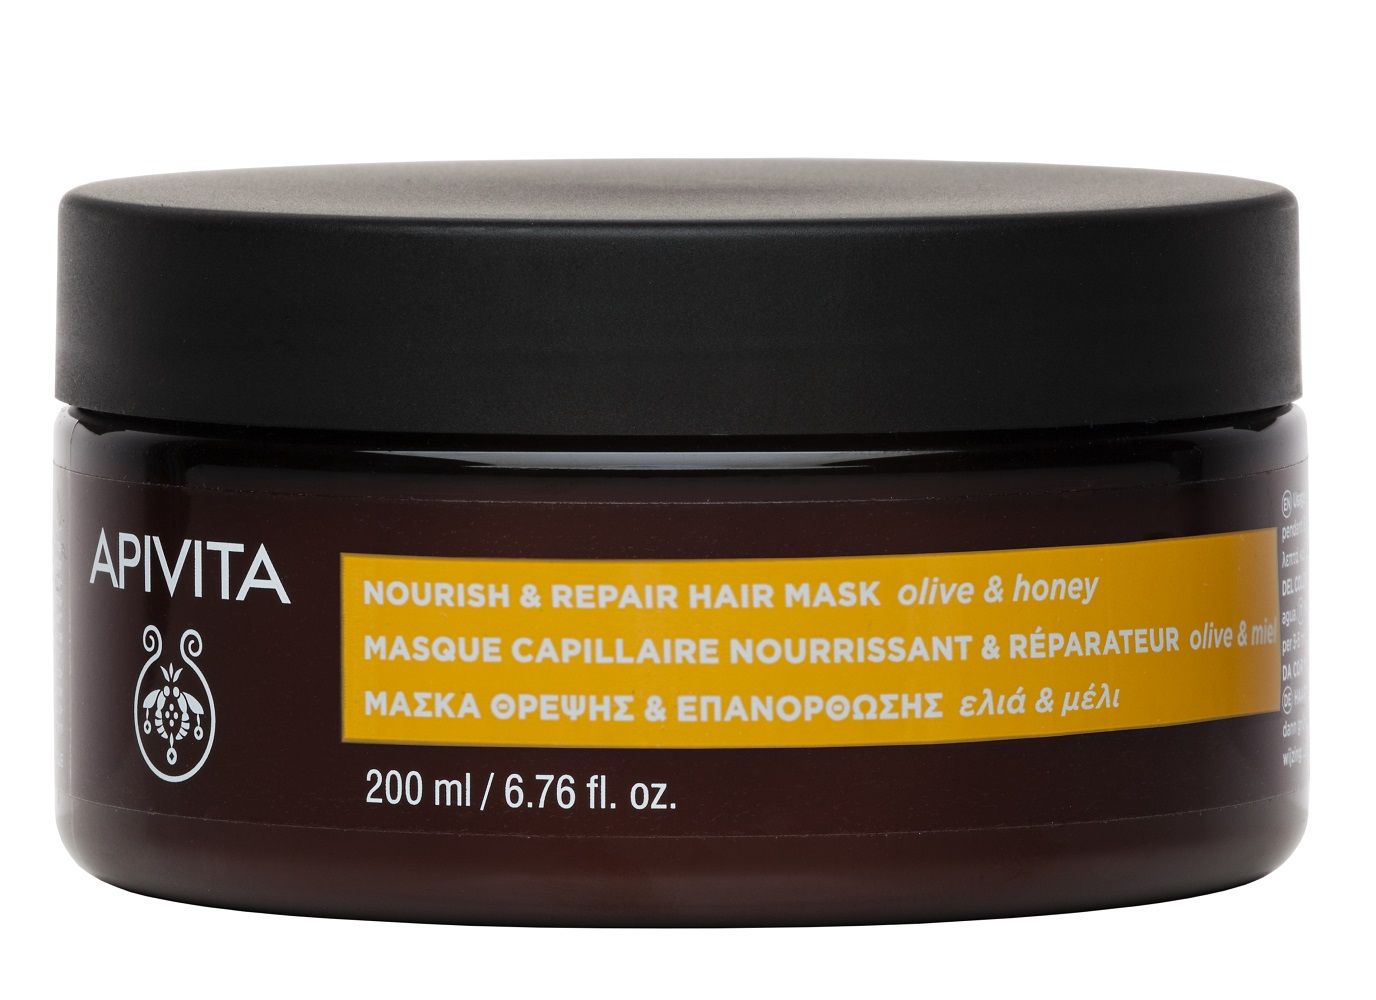 Apivita Intense Repair маска для волос, 200 ml